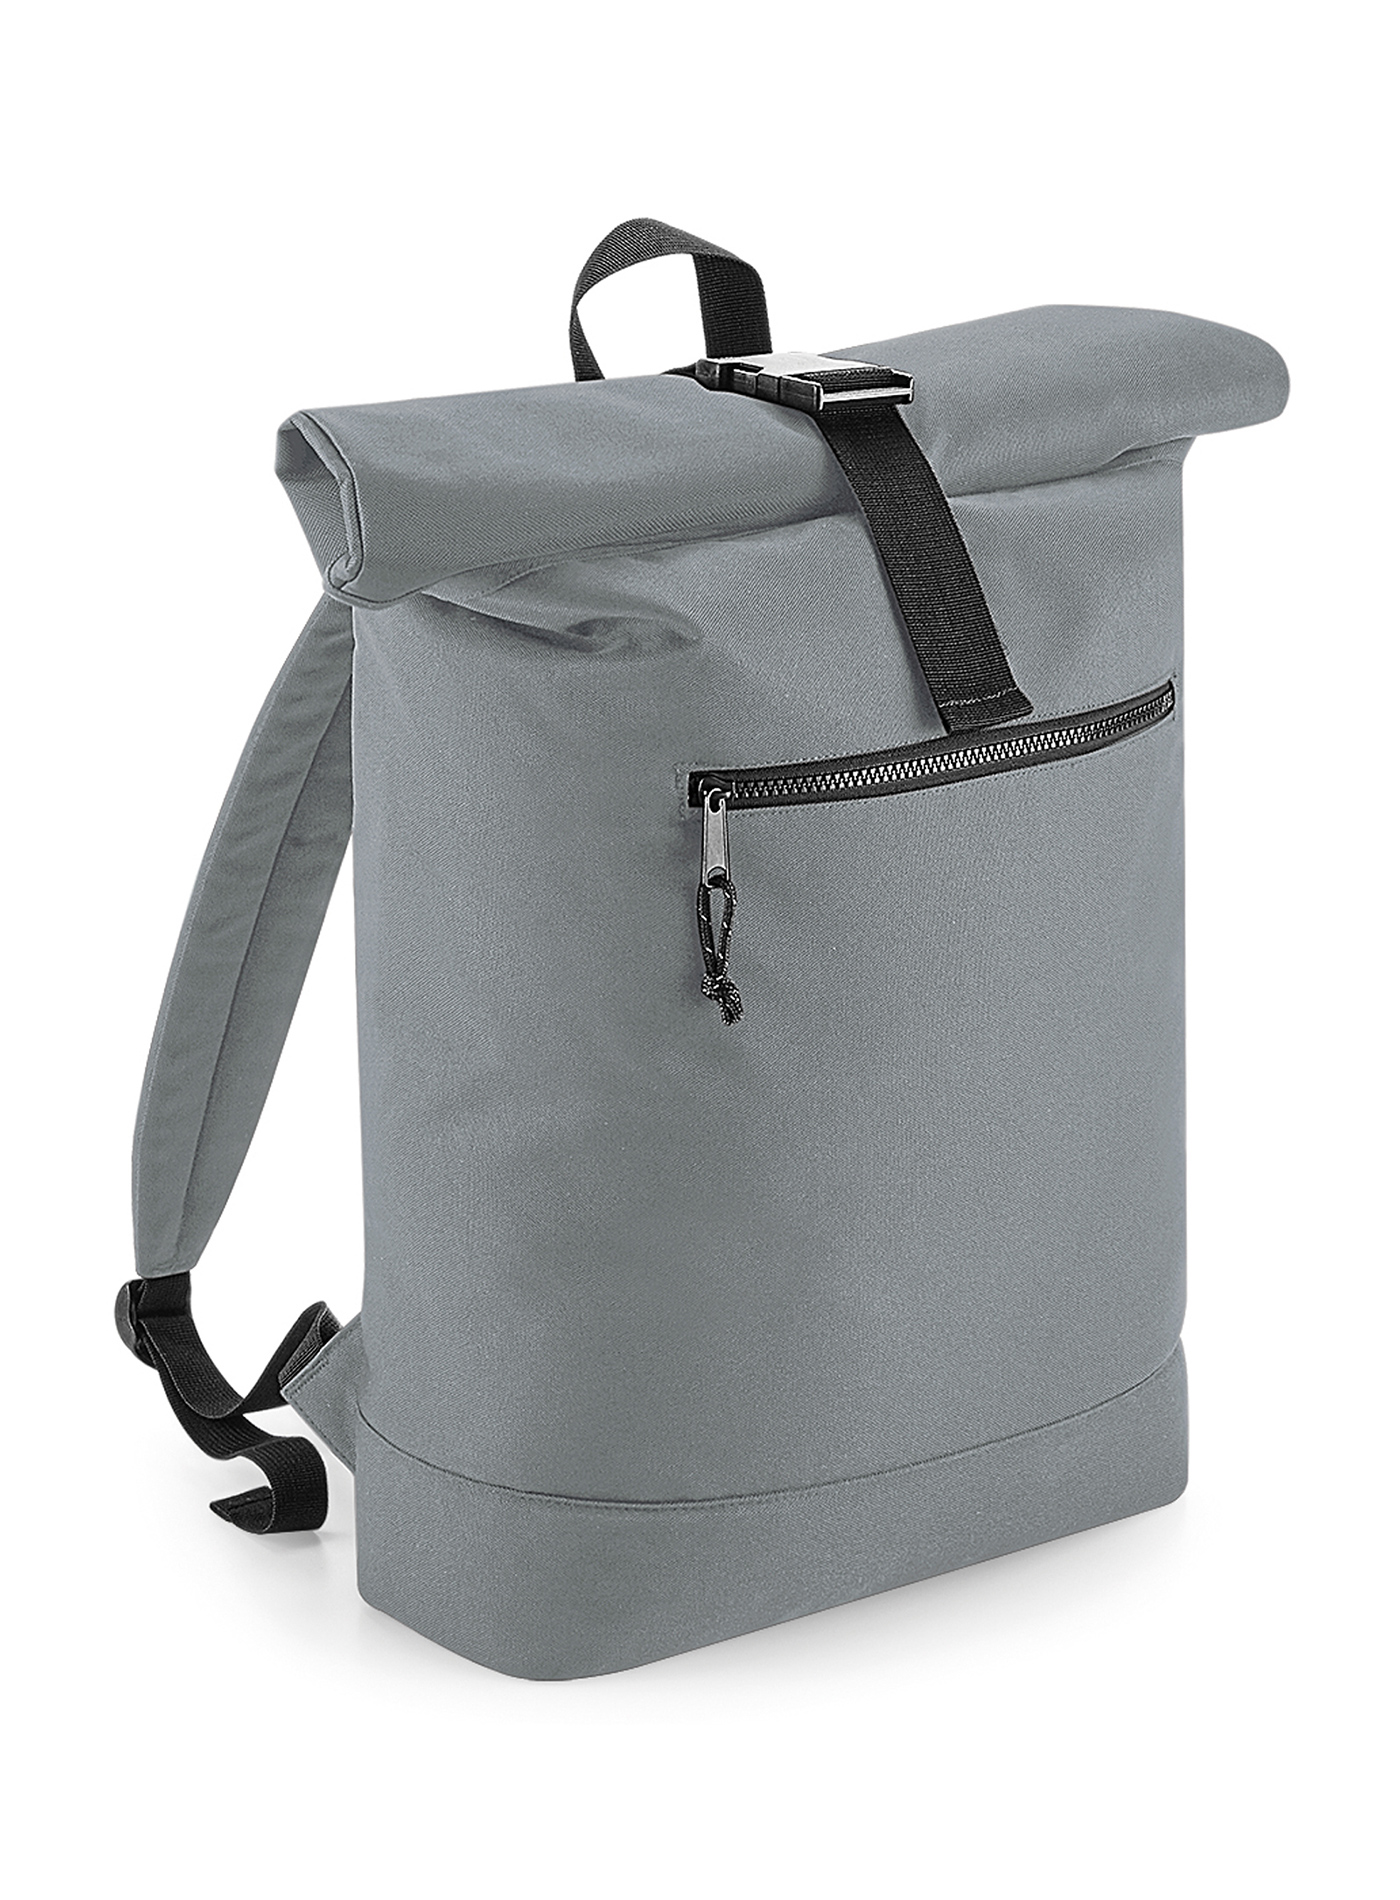 Batoh Bag Base Roll Top Recycled - Světle šedý melír univerzal